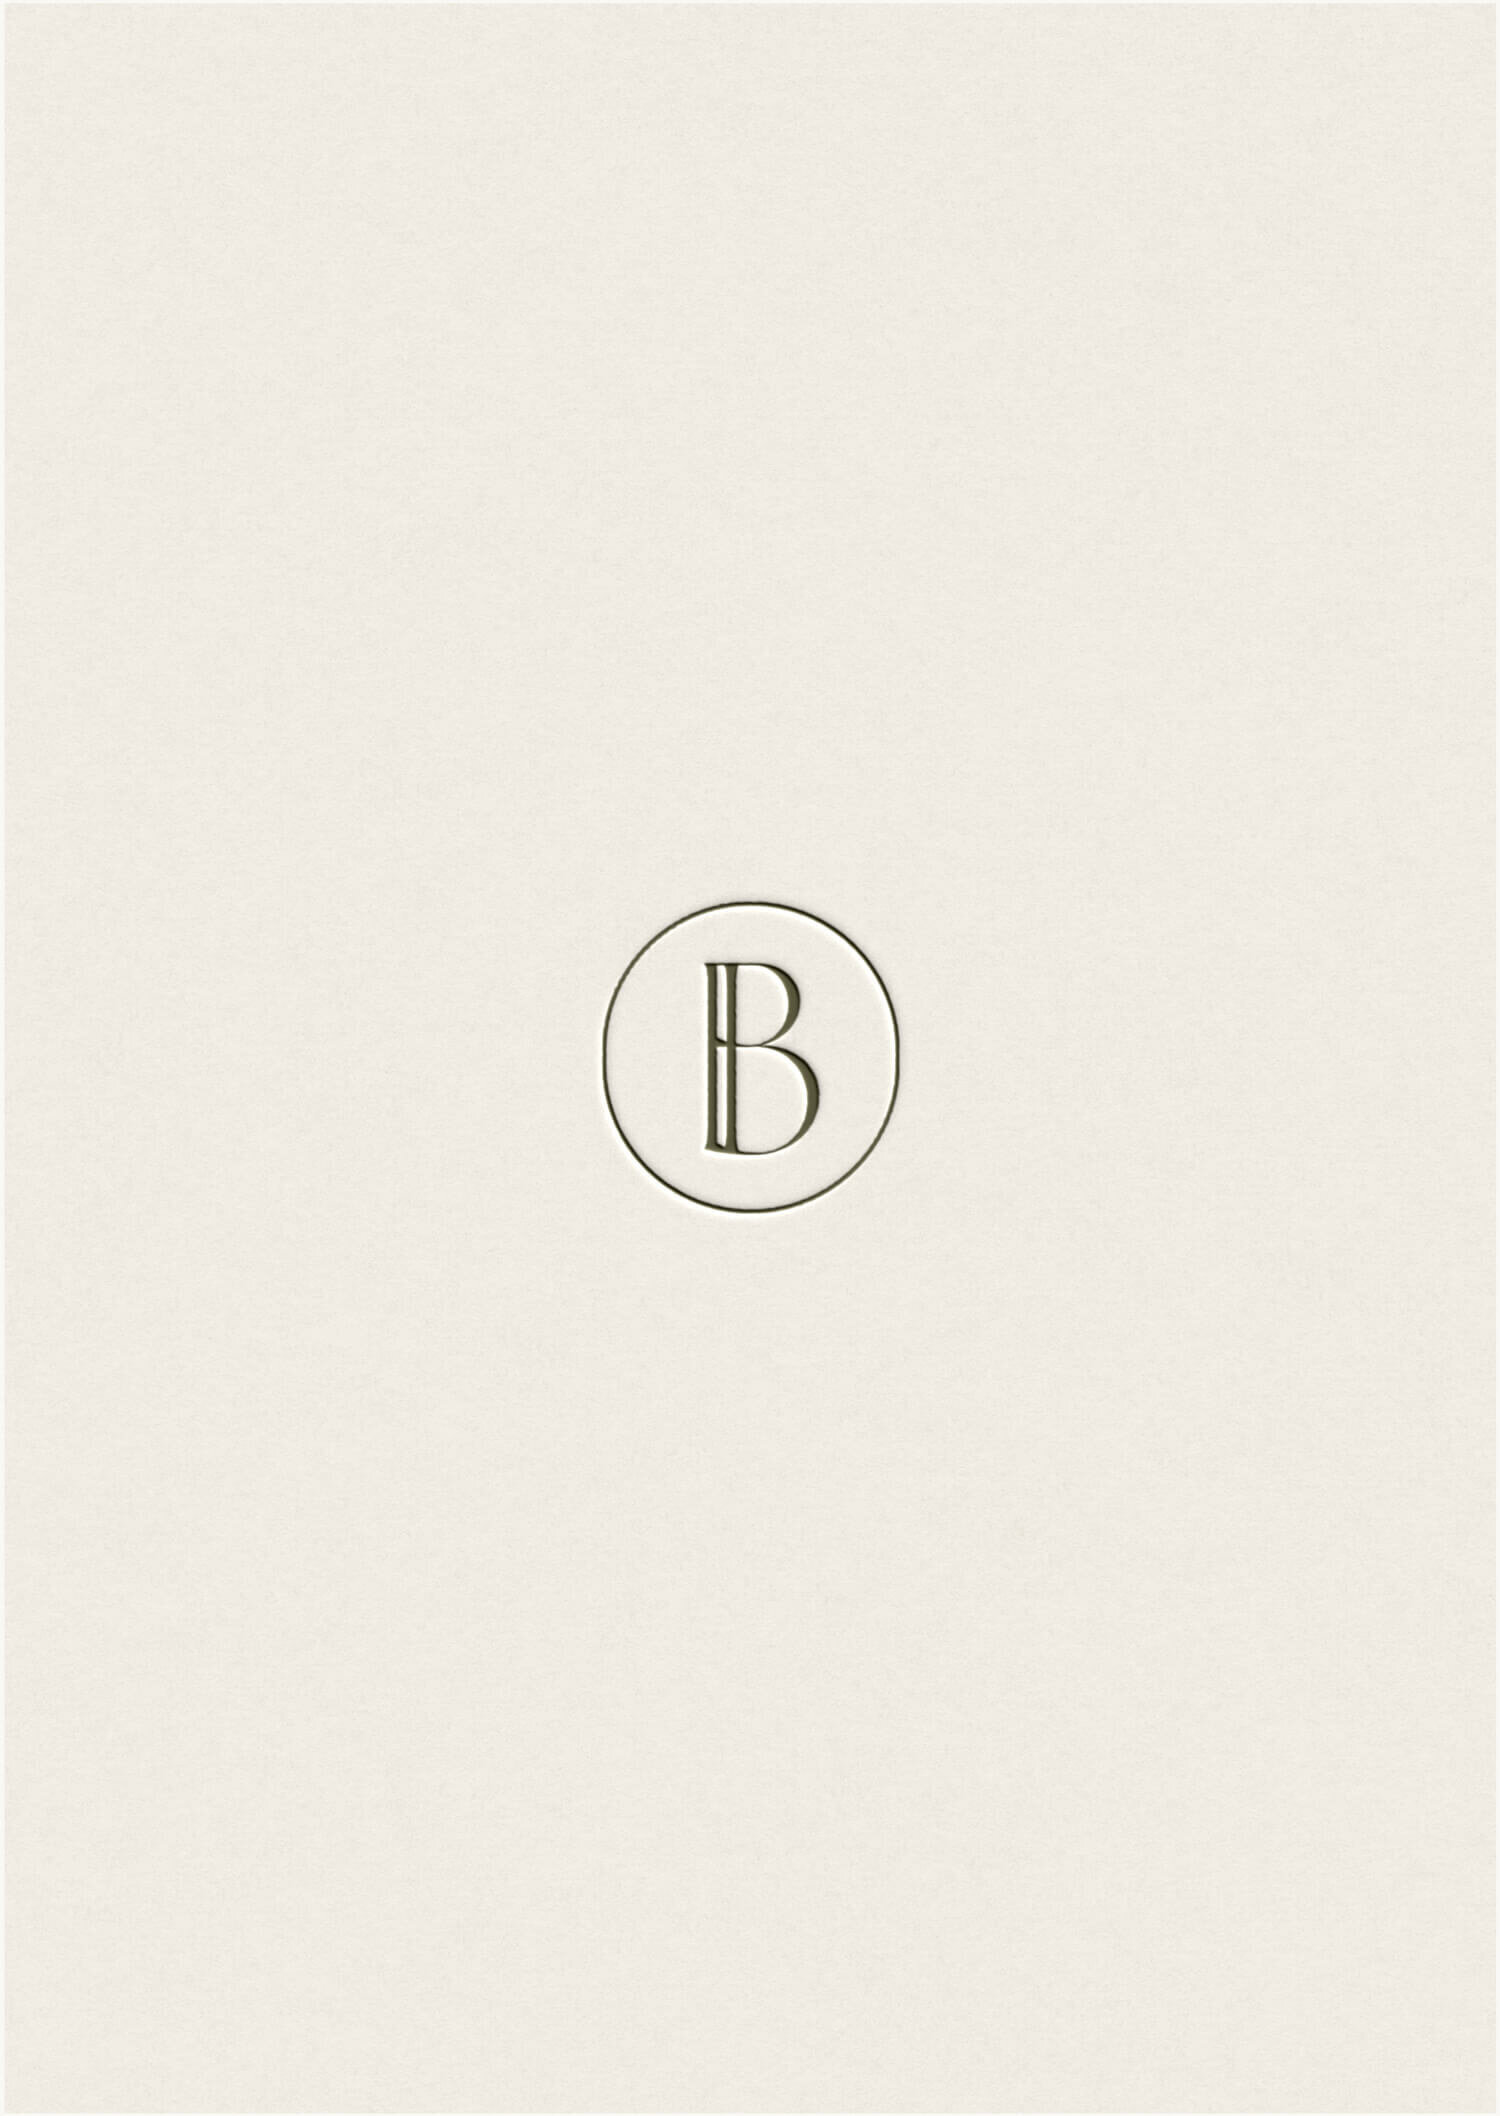 BI-Monogram-timeless-branding-design